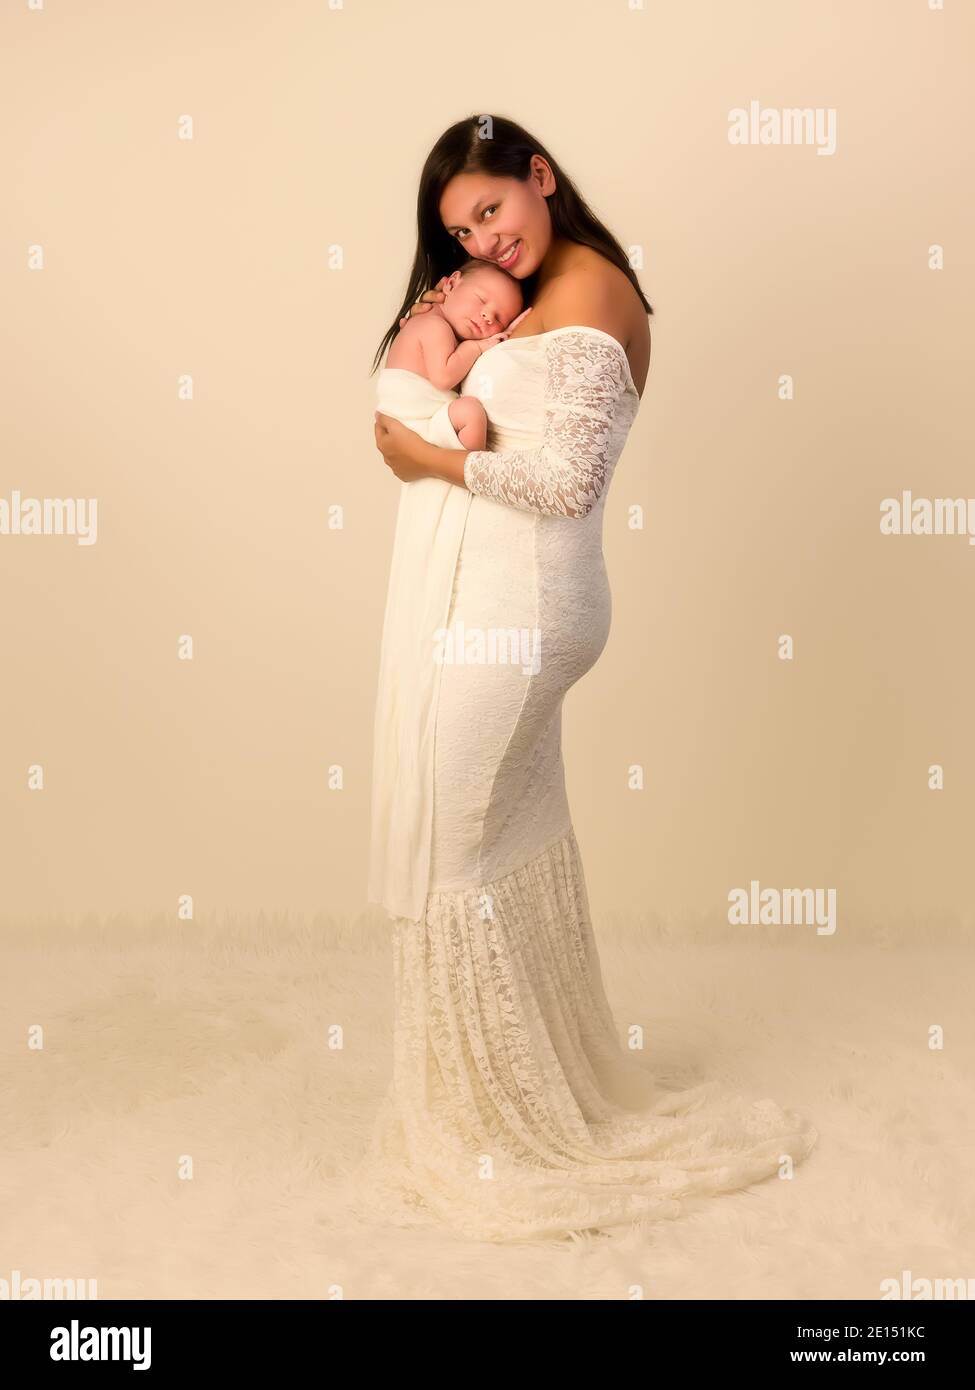 Belle jeune mère dans une robe de dentelle blanche posant avec son fils nouveau-né de 7 jours Banque D'Images